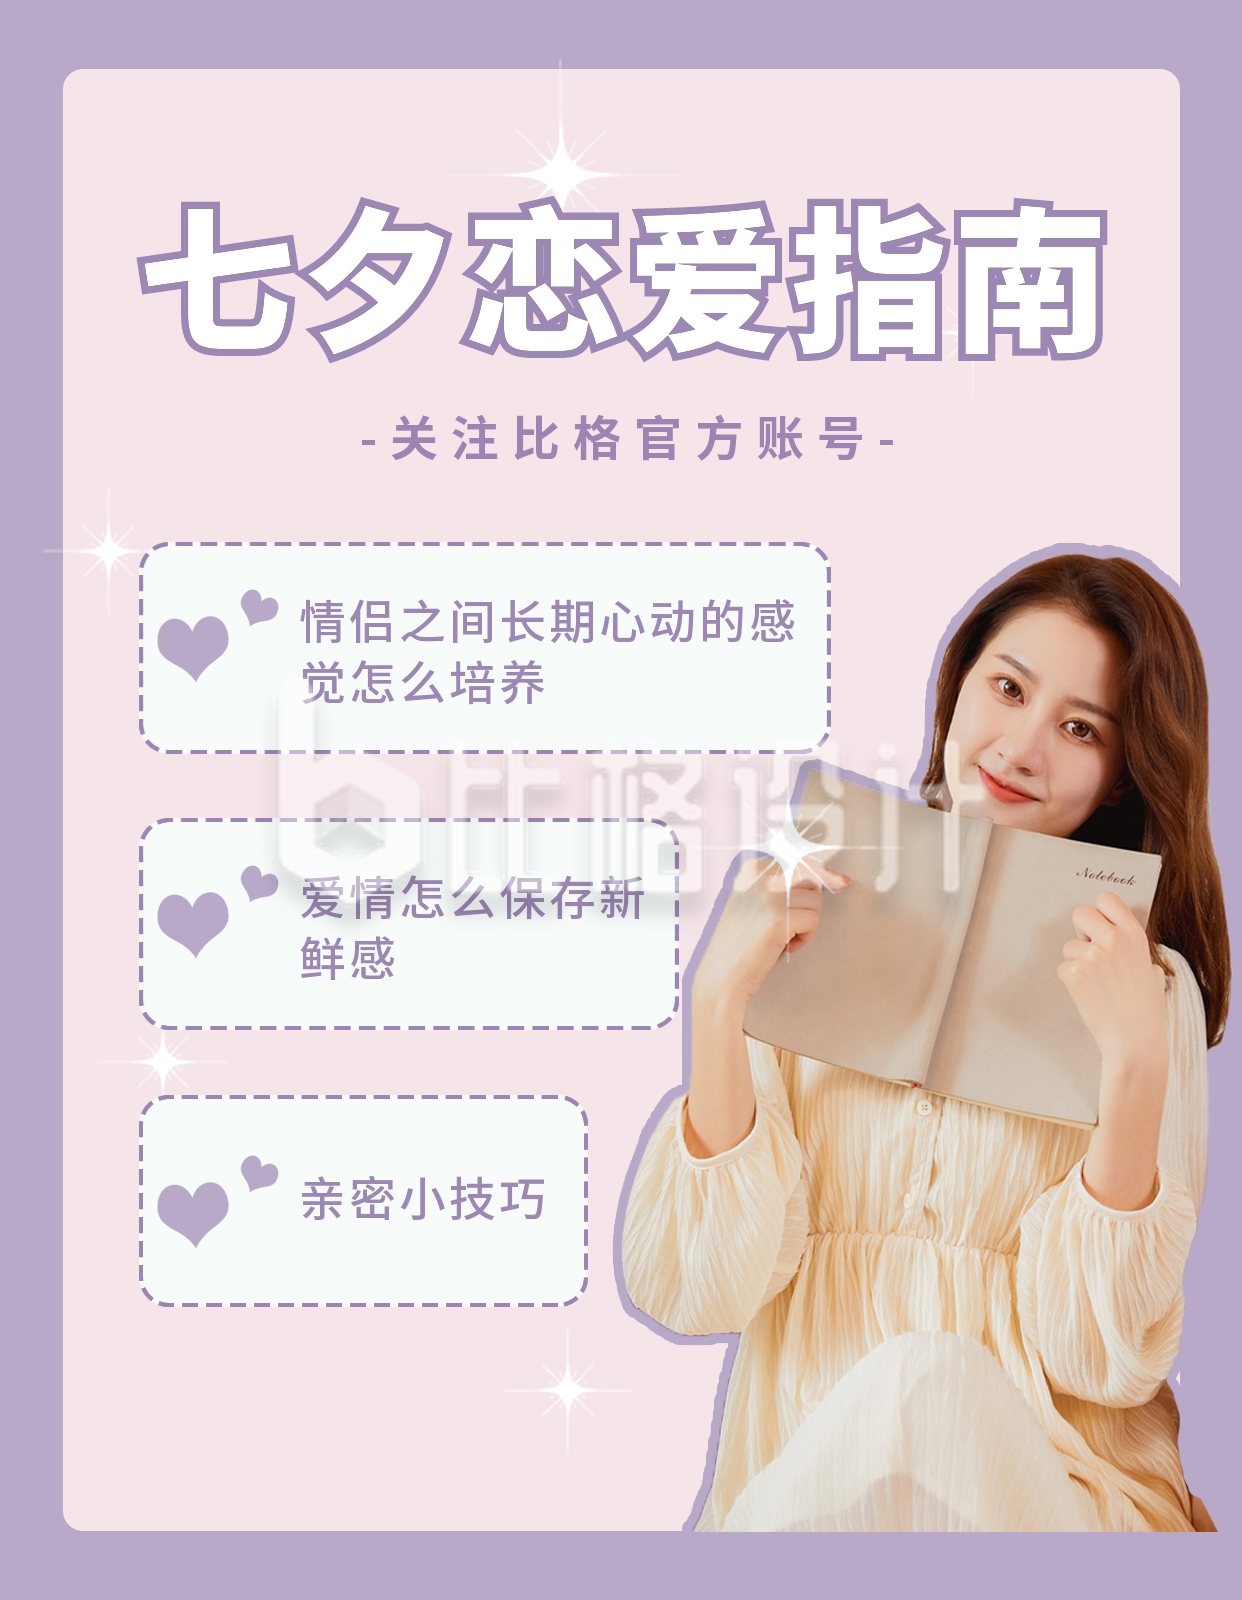 七夕节情侣小测试趣味宣传小红书封面